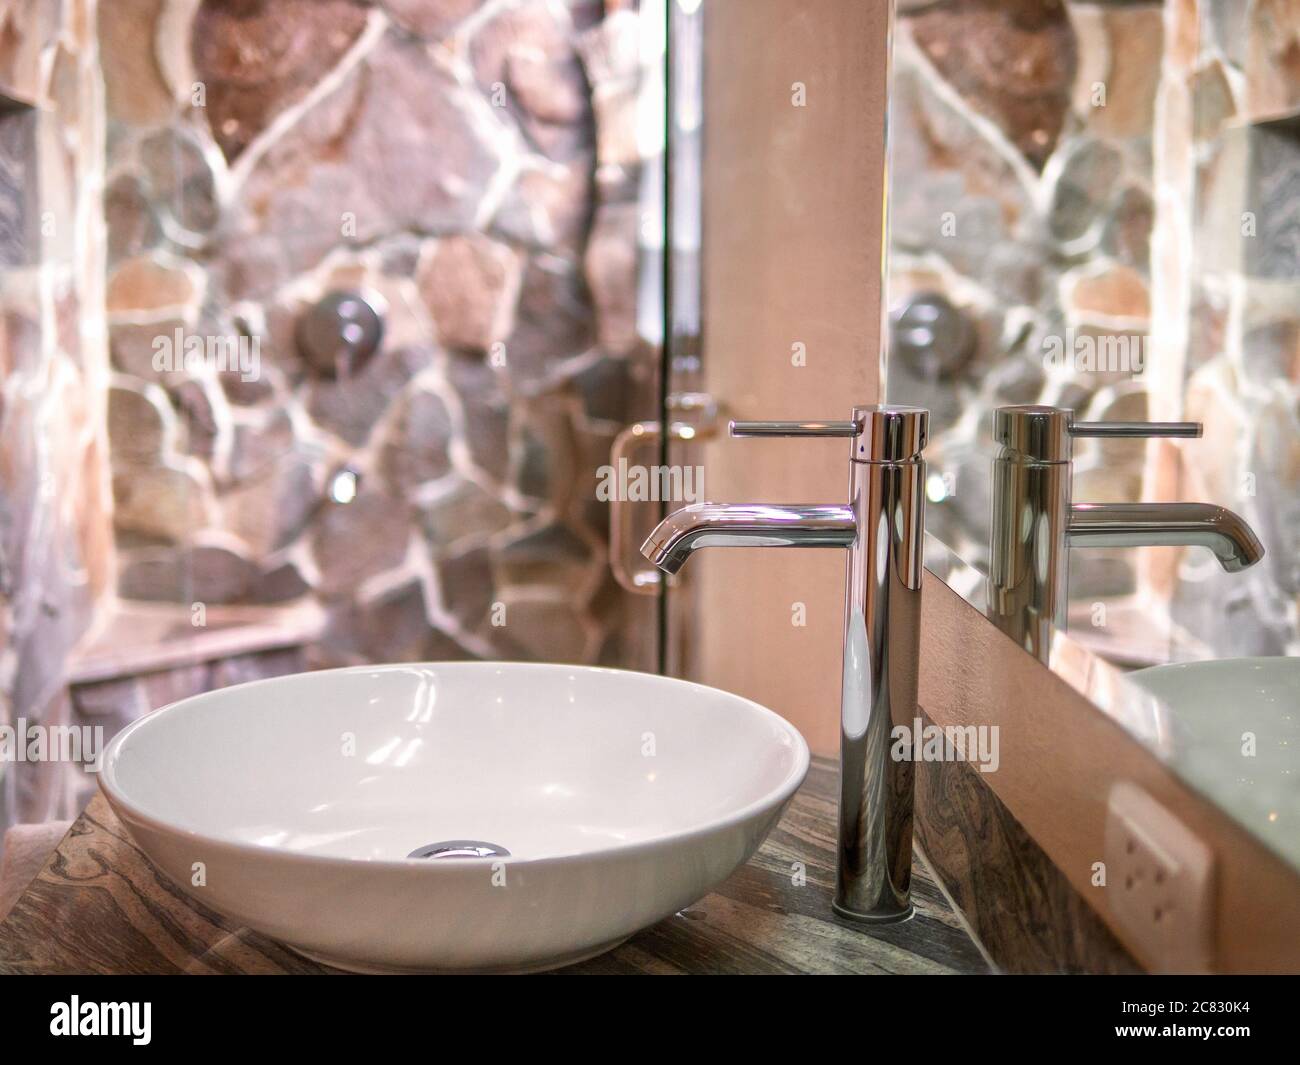 Vue rapprochée d'un seul lavabo en céramique blanche, d'un robinet en chrome poli et d'un miroir dans une salle de bains luxueuse avec cabine de douche en pierre naturelle. Banque D'Images